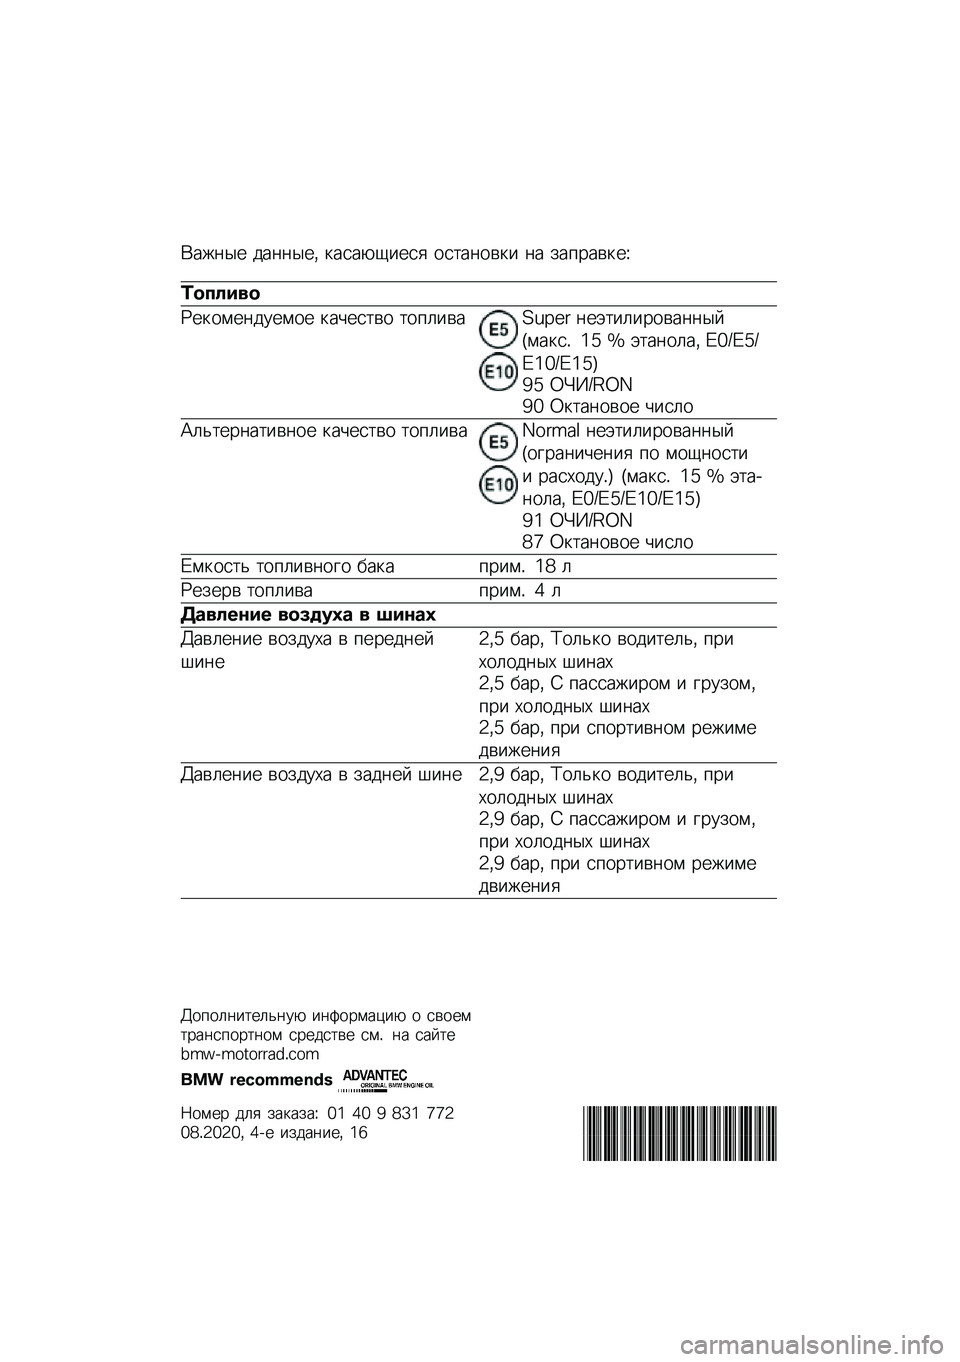 BMW MOTORRAD R 1250 RS 2020  Руководство по эксплуатации (in Russian) �(���	�� ���	�	���* �
����-�1���� ���
��	���
� �	� ���%����
��O
�	������
�P��
����	������ �
��&���
�� �
��%�����Q�M�R�9�: �	��+�
��������	